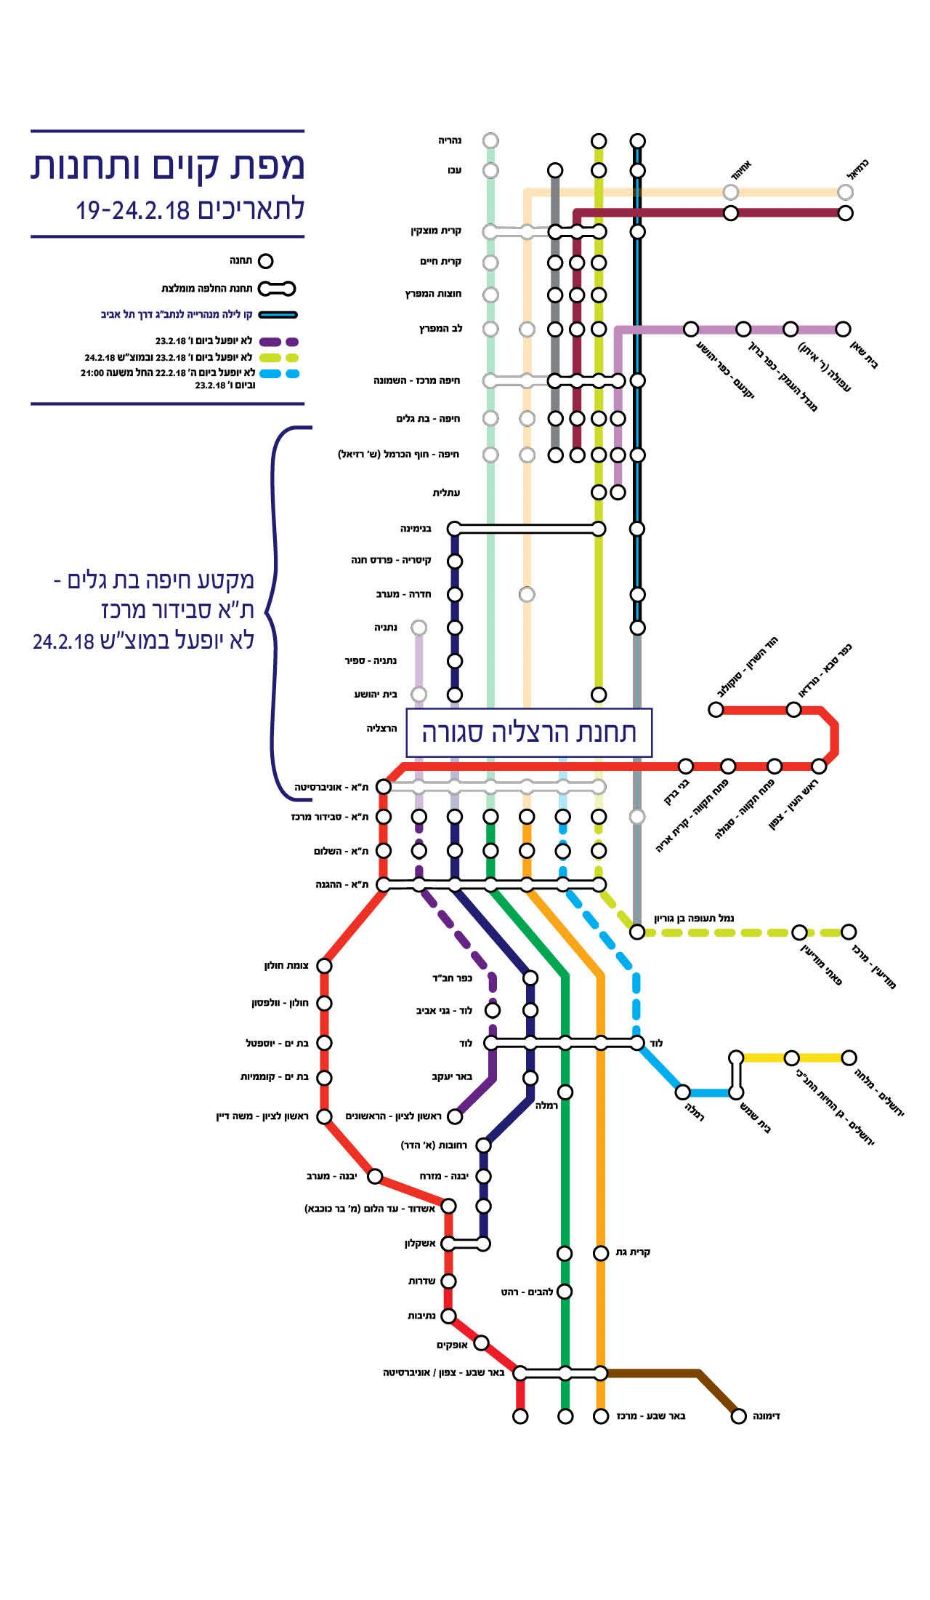 מפת קווי הרכבת לשבוע העבודות (באדיבות רכבת ישראל)